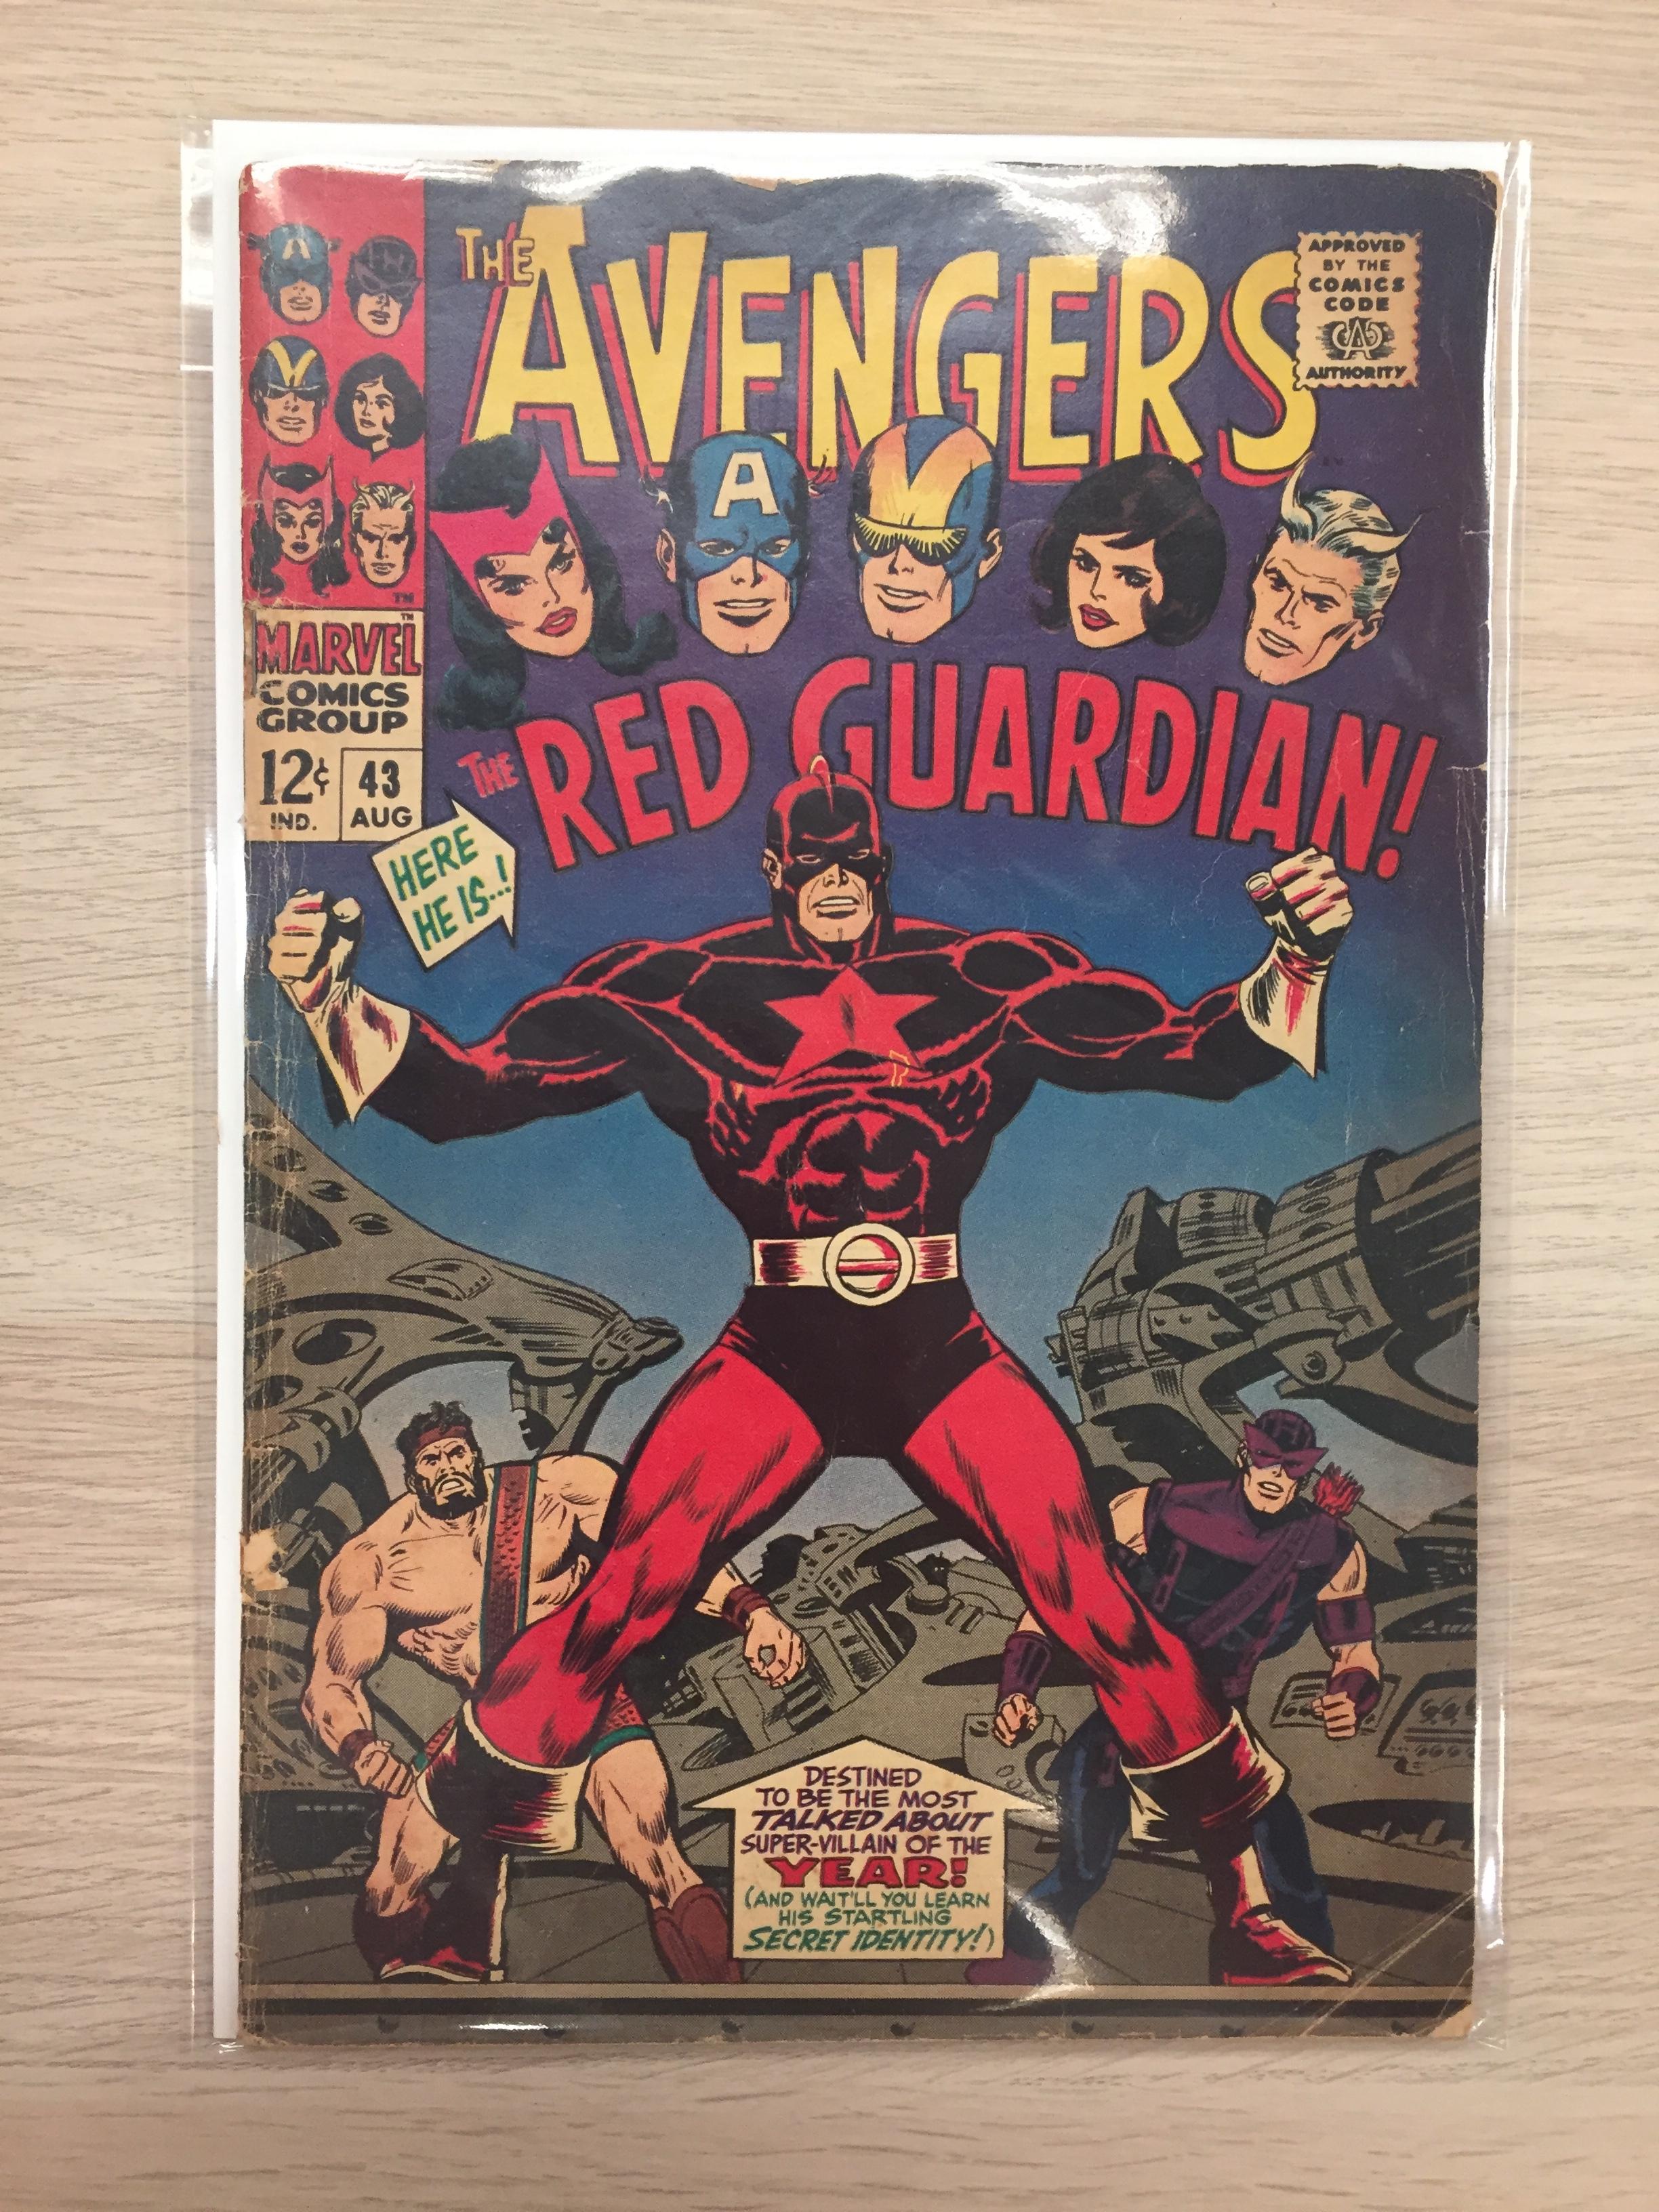 The Avengers #43 - Marvel Comic Book